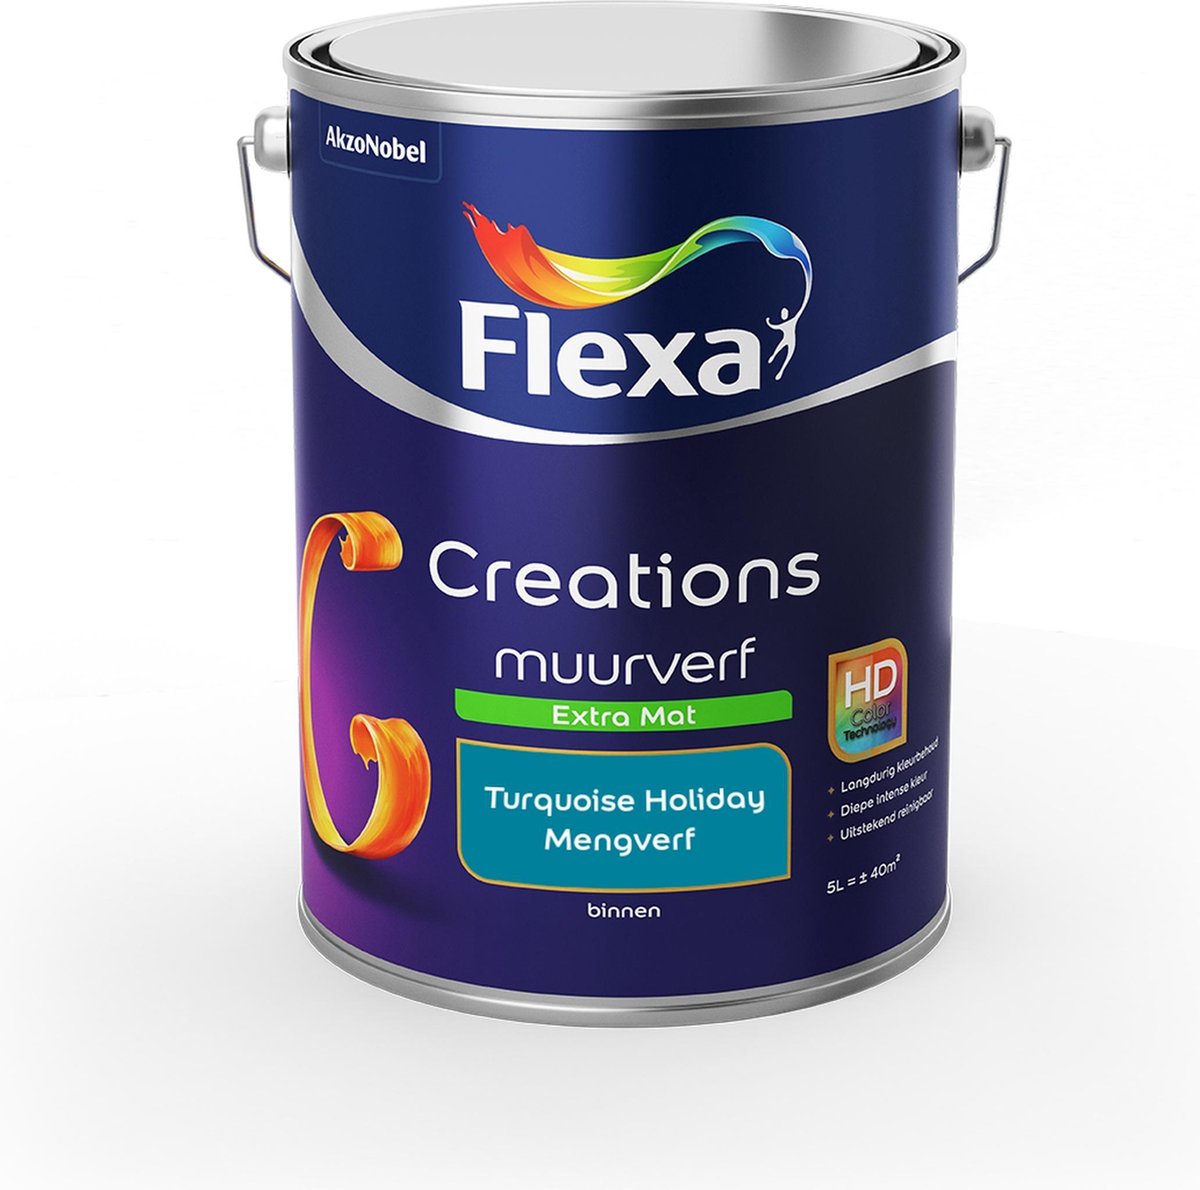 Flexa Creations - Muurverf Extra Mat - Turquoise Holiday - Mengkleuren Collectie - 5 Liter